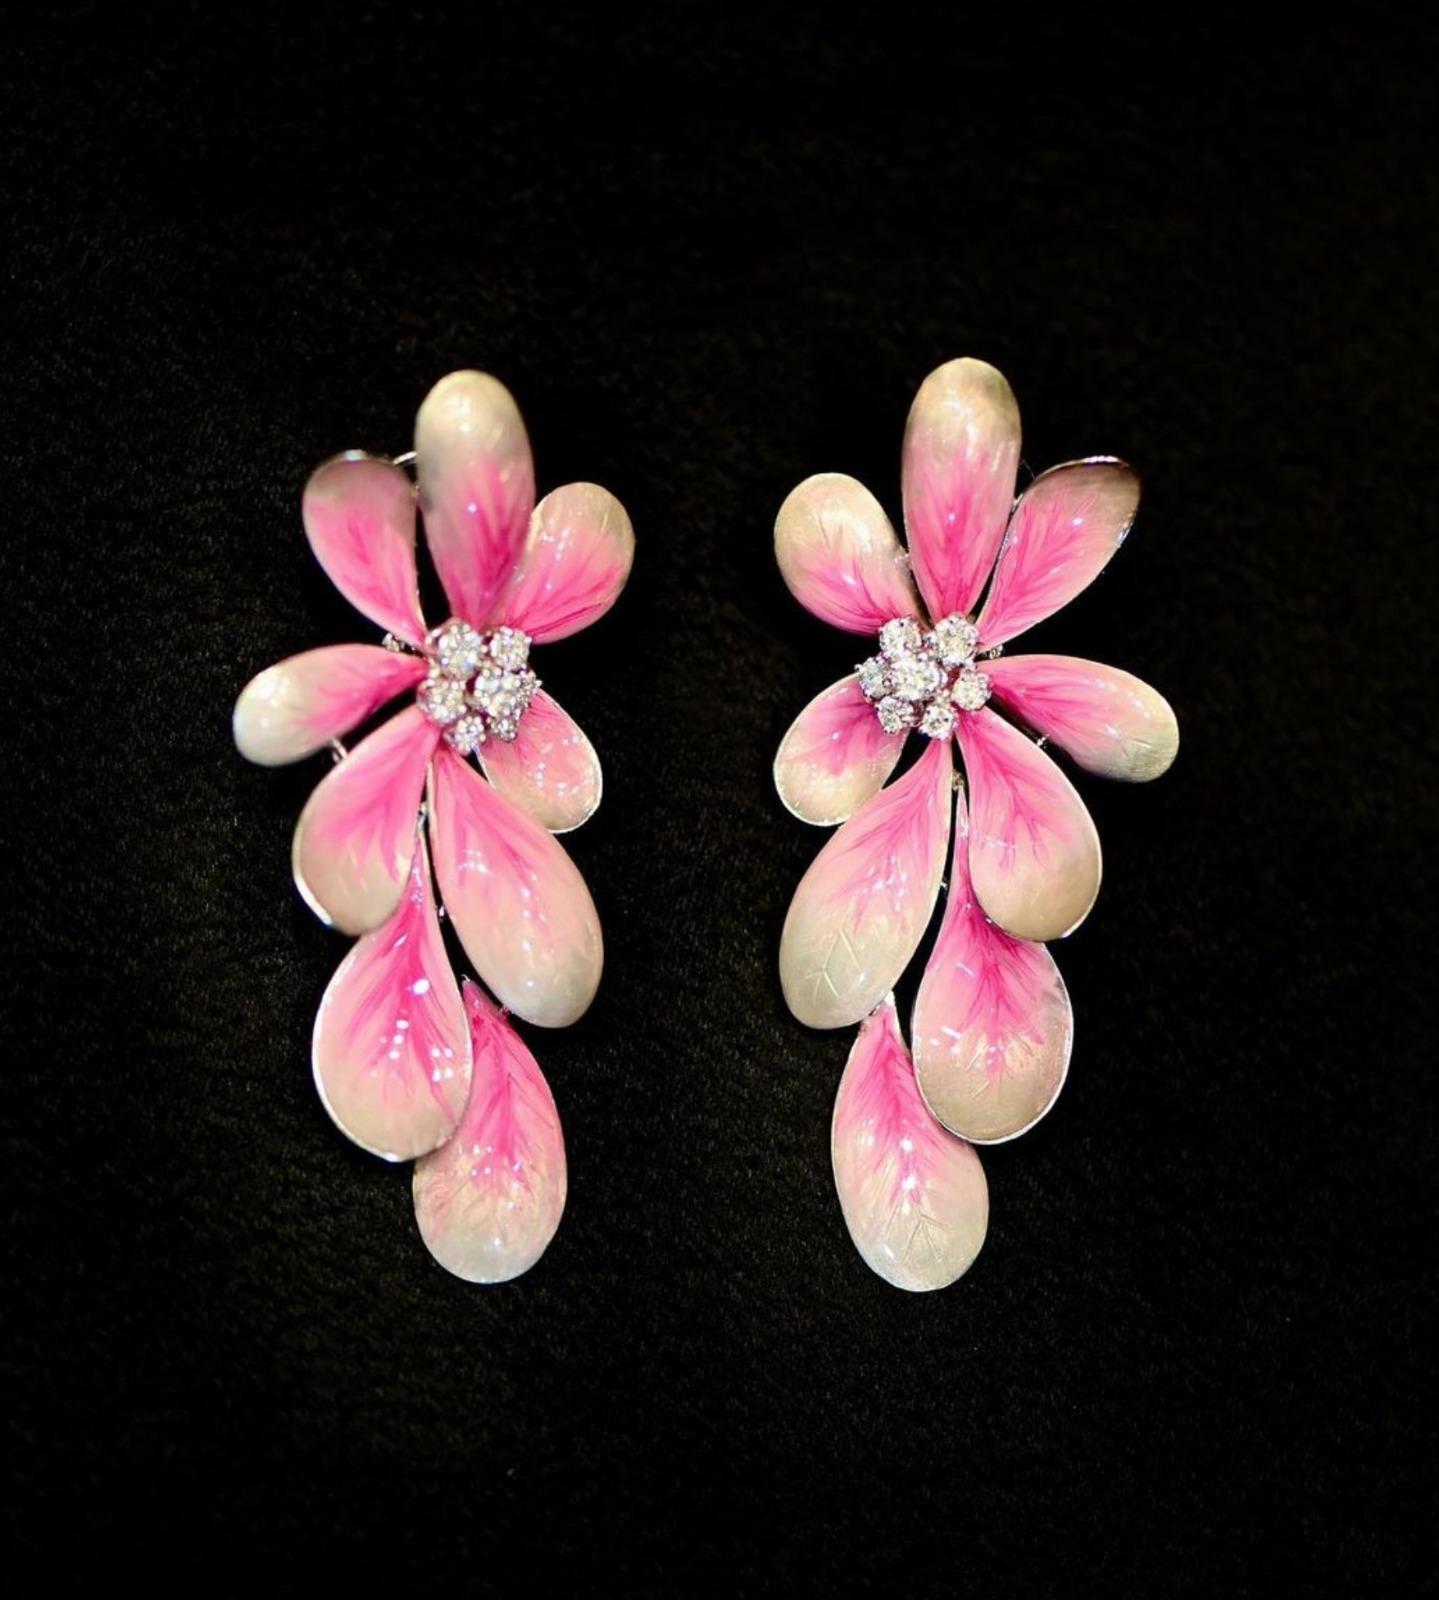 Voici les charmantes boucles d'oreilles DAISY FLOWER PINK, un ajout délicieux à toute collection de bijoux. Réalisées en or blanc, ces boucles d'oreilles présentent de ravissants motifs de fleurs de marguerite ornés de diamants ronds de taille